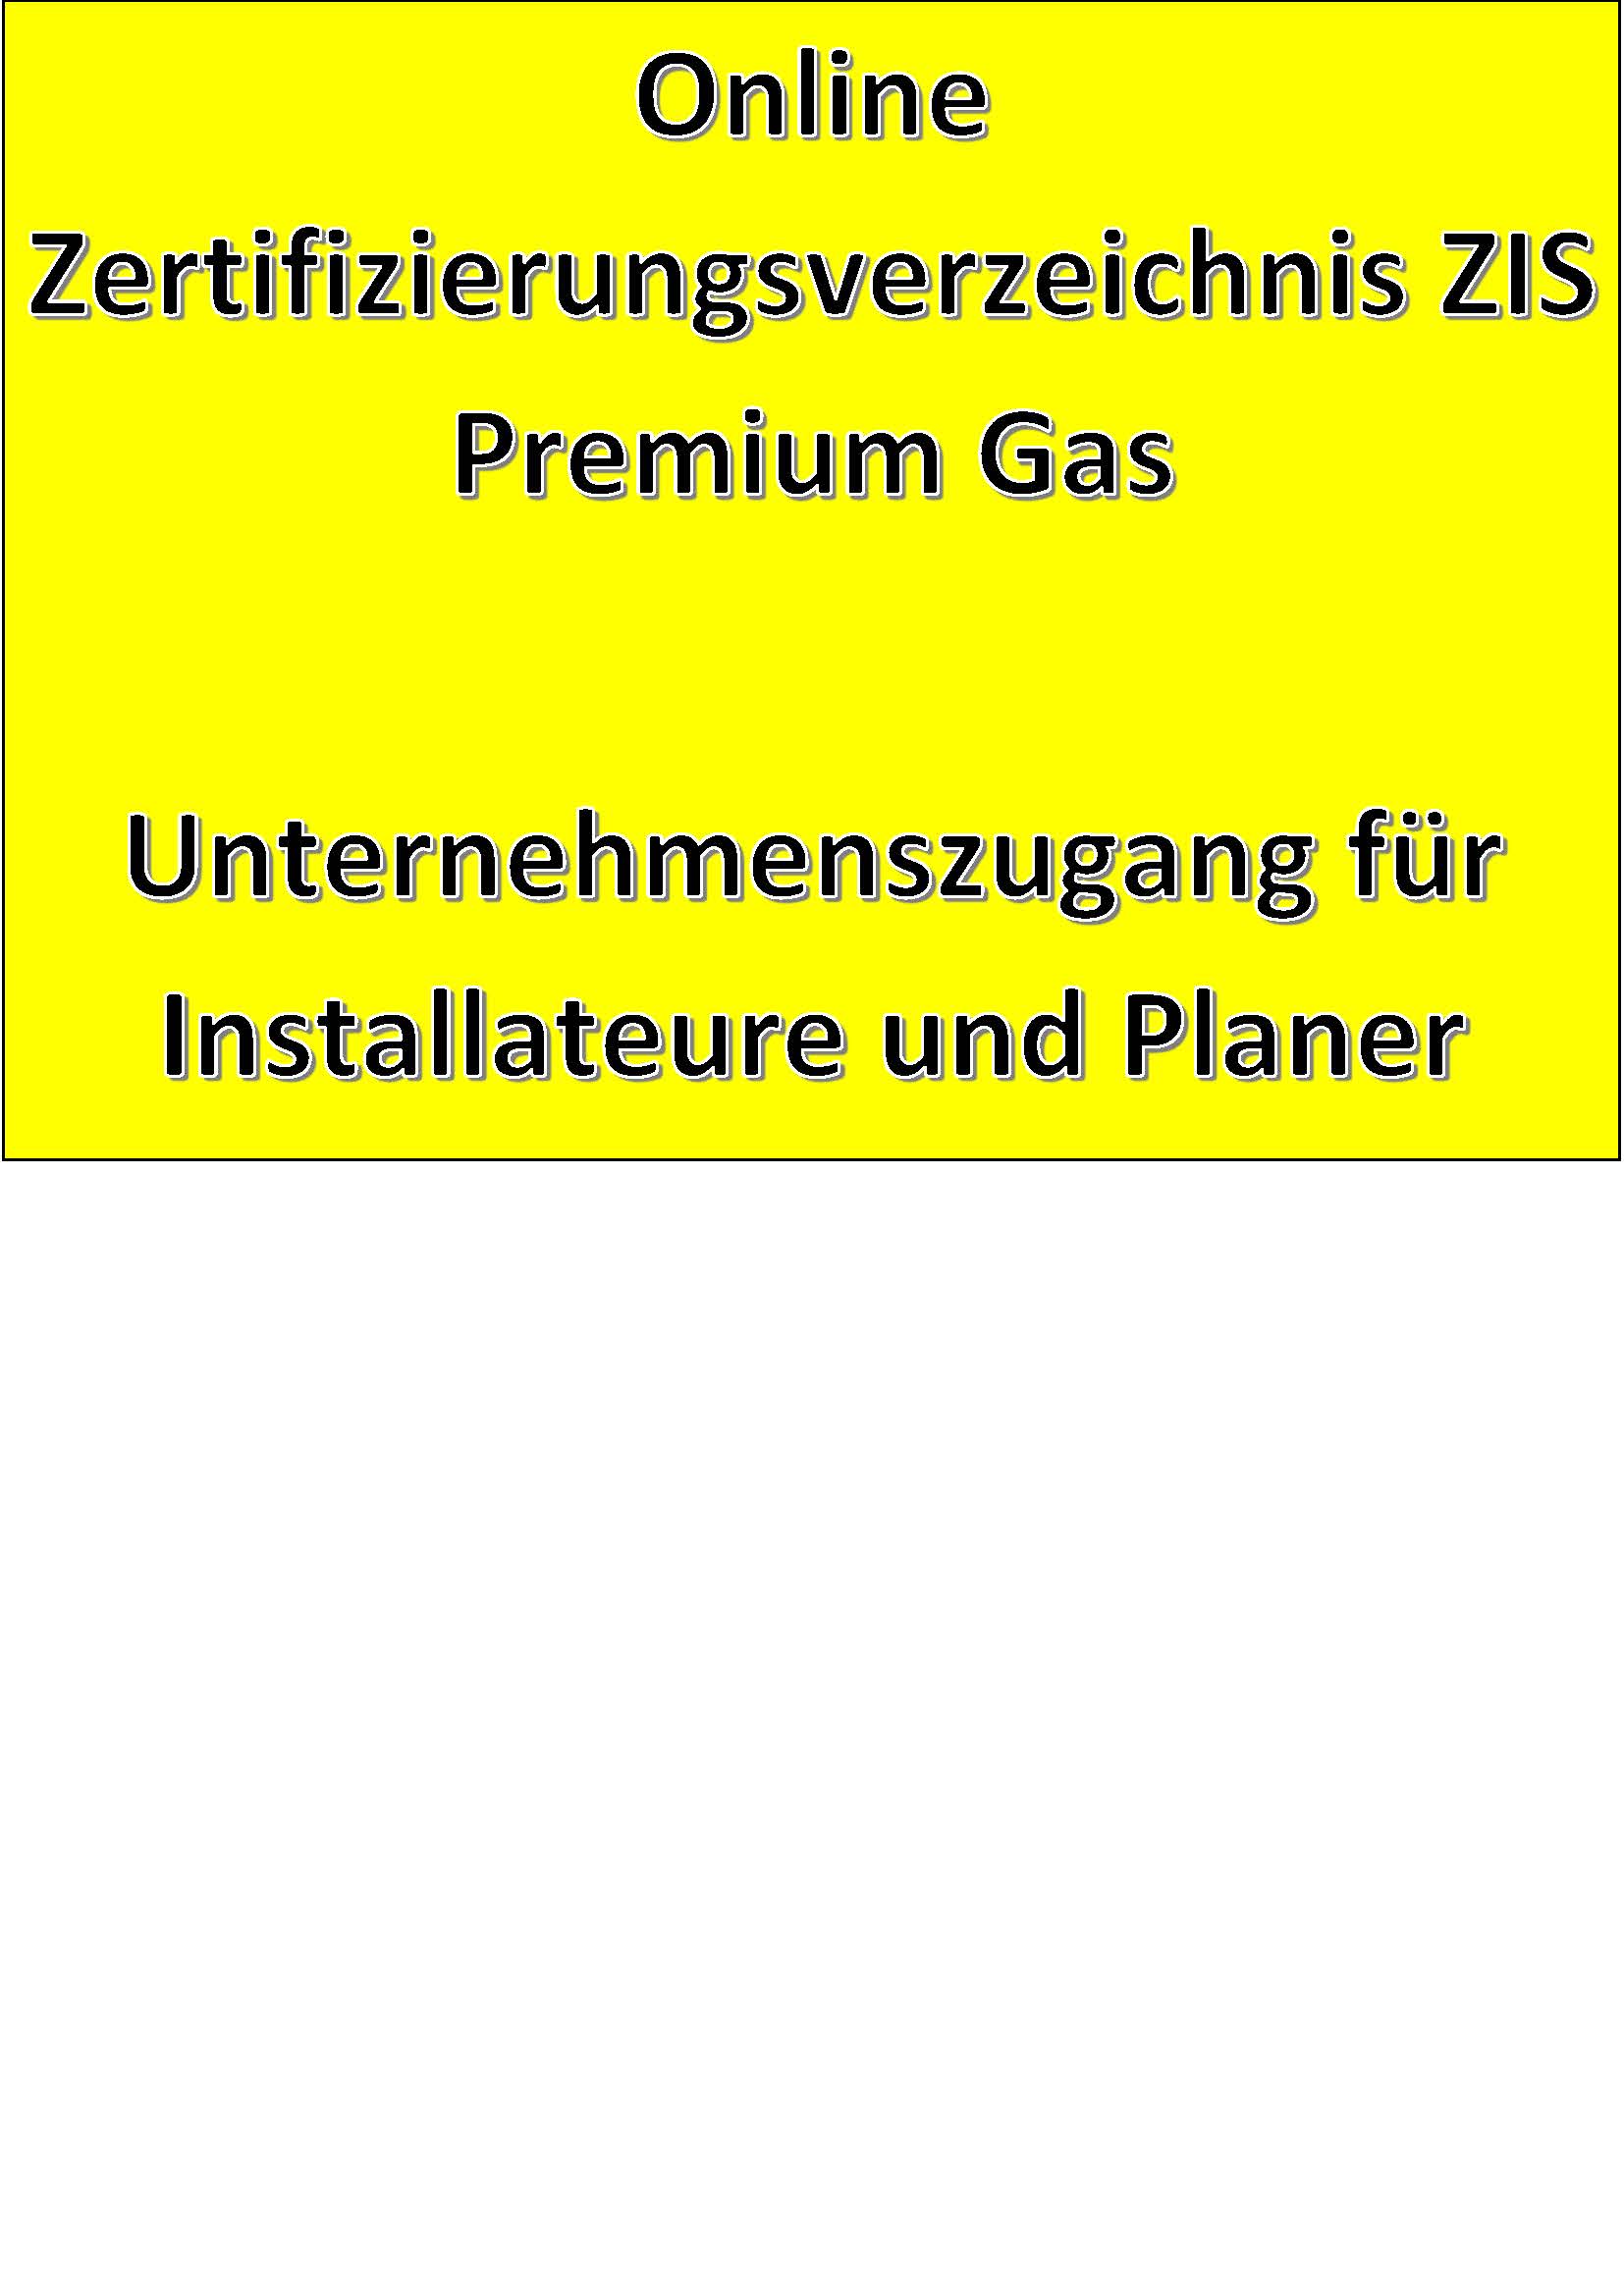 Online Zertifizierungsverzeichnis ZIS Premium Gas Unternehmenszugang für Installateure und Planer